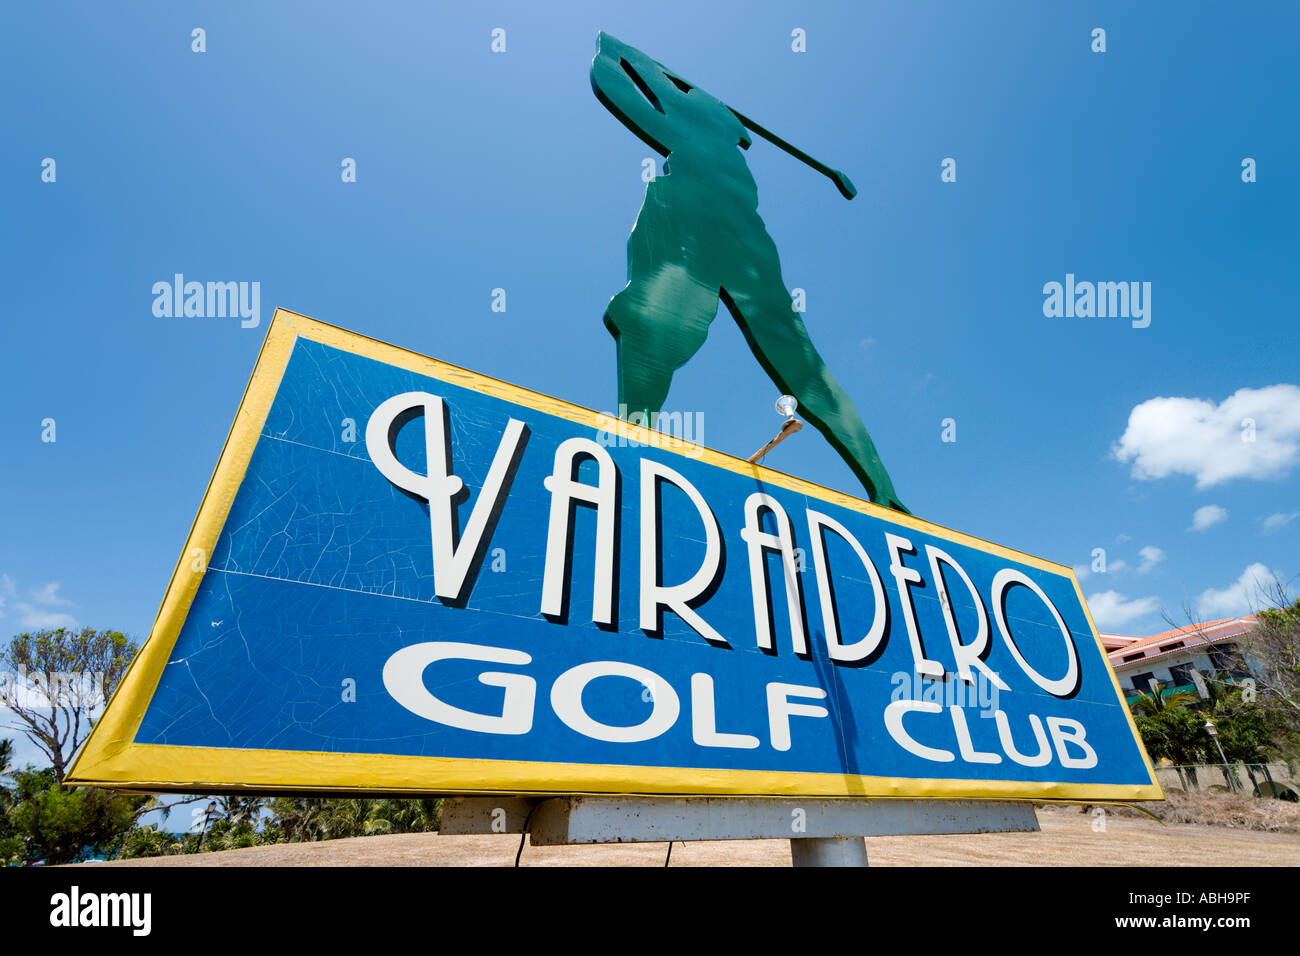 Sign for the Varadero Golf Club, Varadero, Cuba Stock Photo